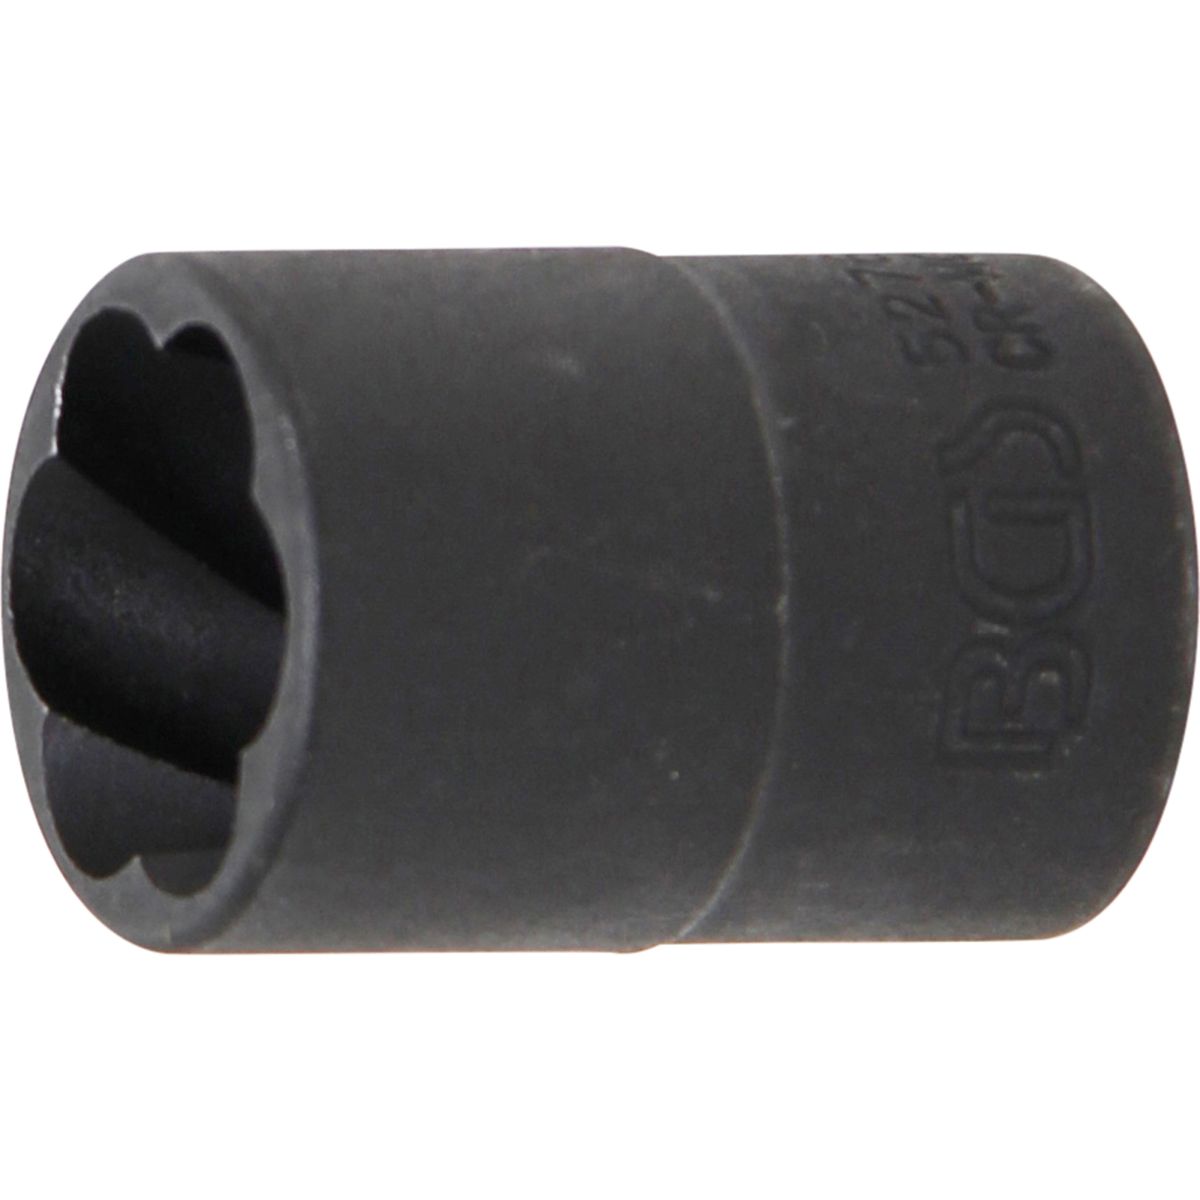 Spiral-Profil-Steckschlüssel-Einsatz / Schraubenausdreher | Antrieb Innenvierkant 10 mm (3/8") | SW 16 mm